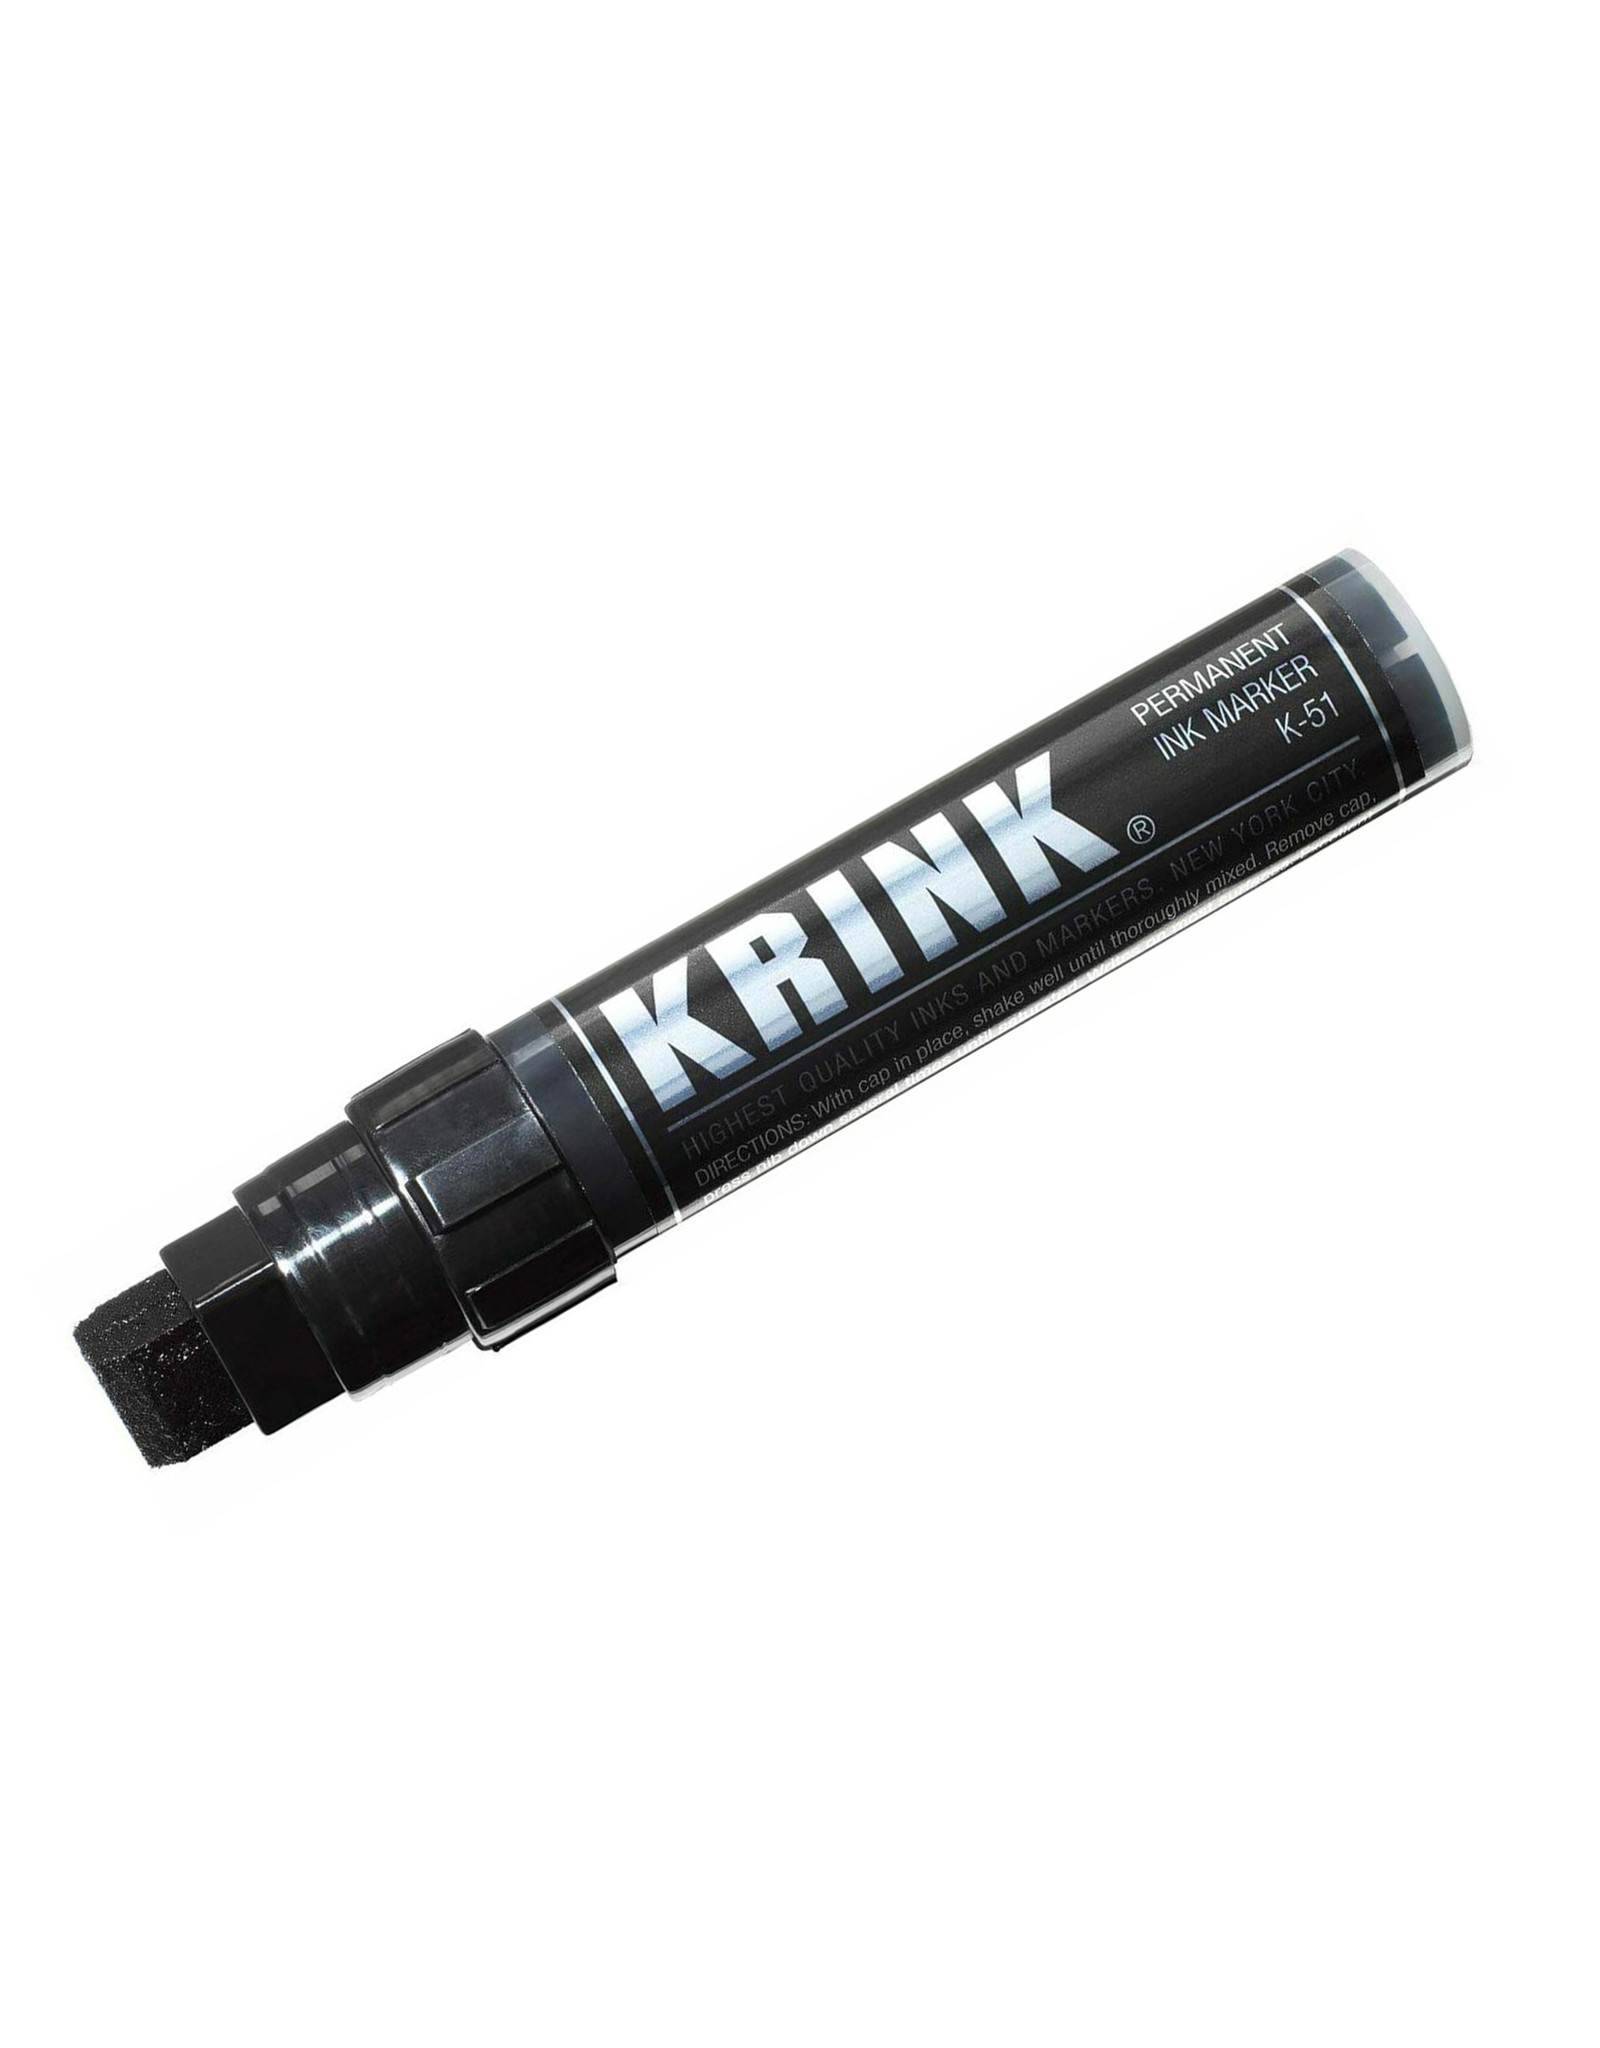 Krink Krink K-51 Alcohol Ink Marker, Black